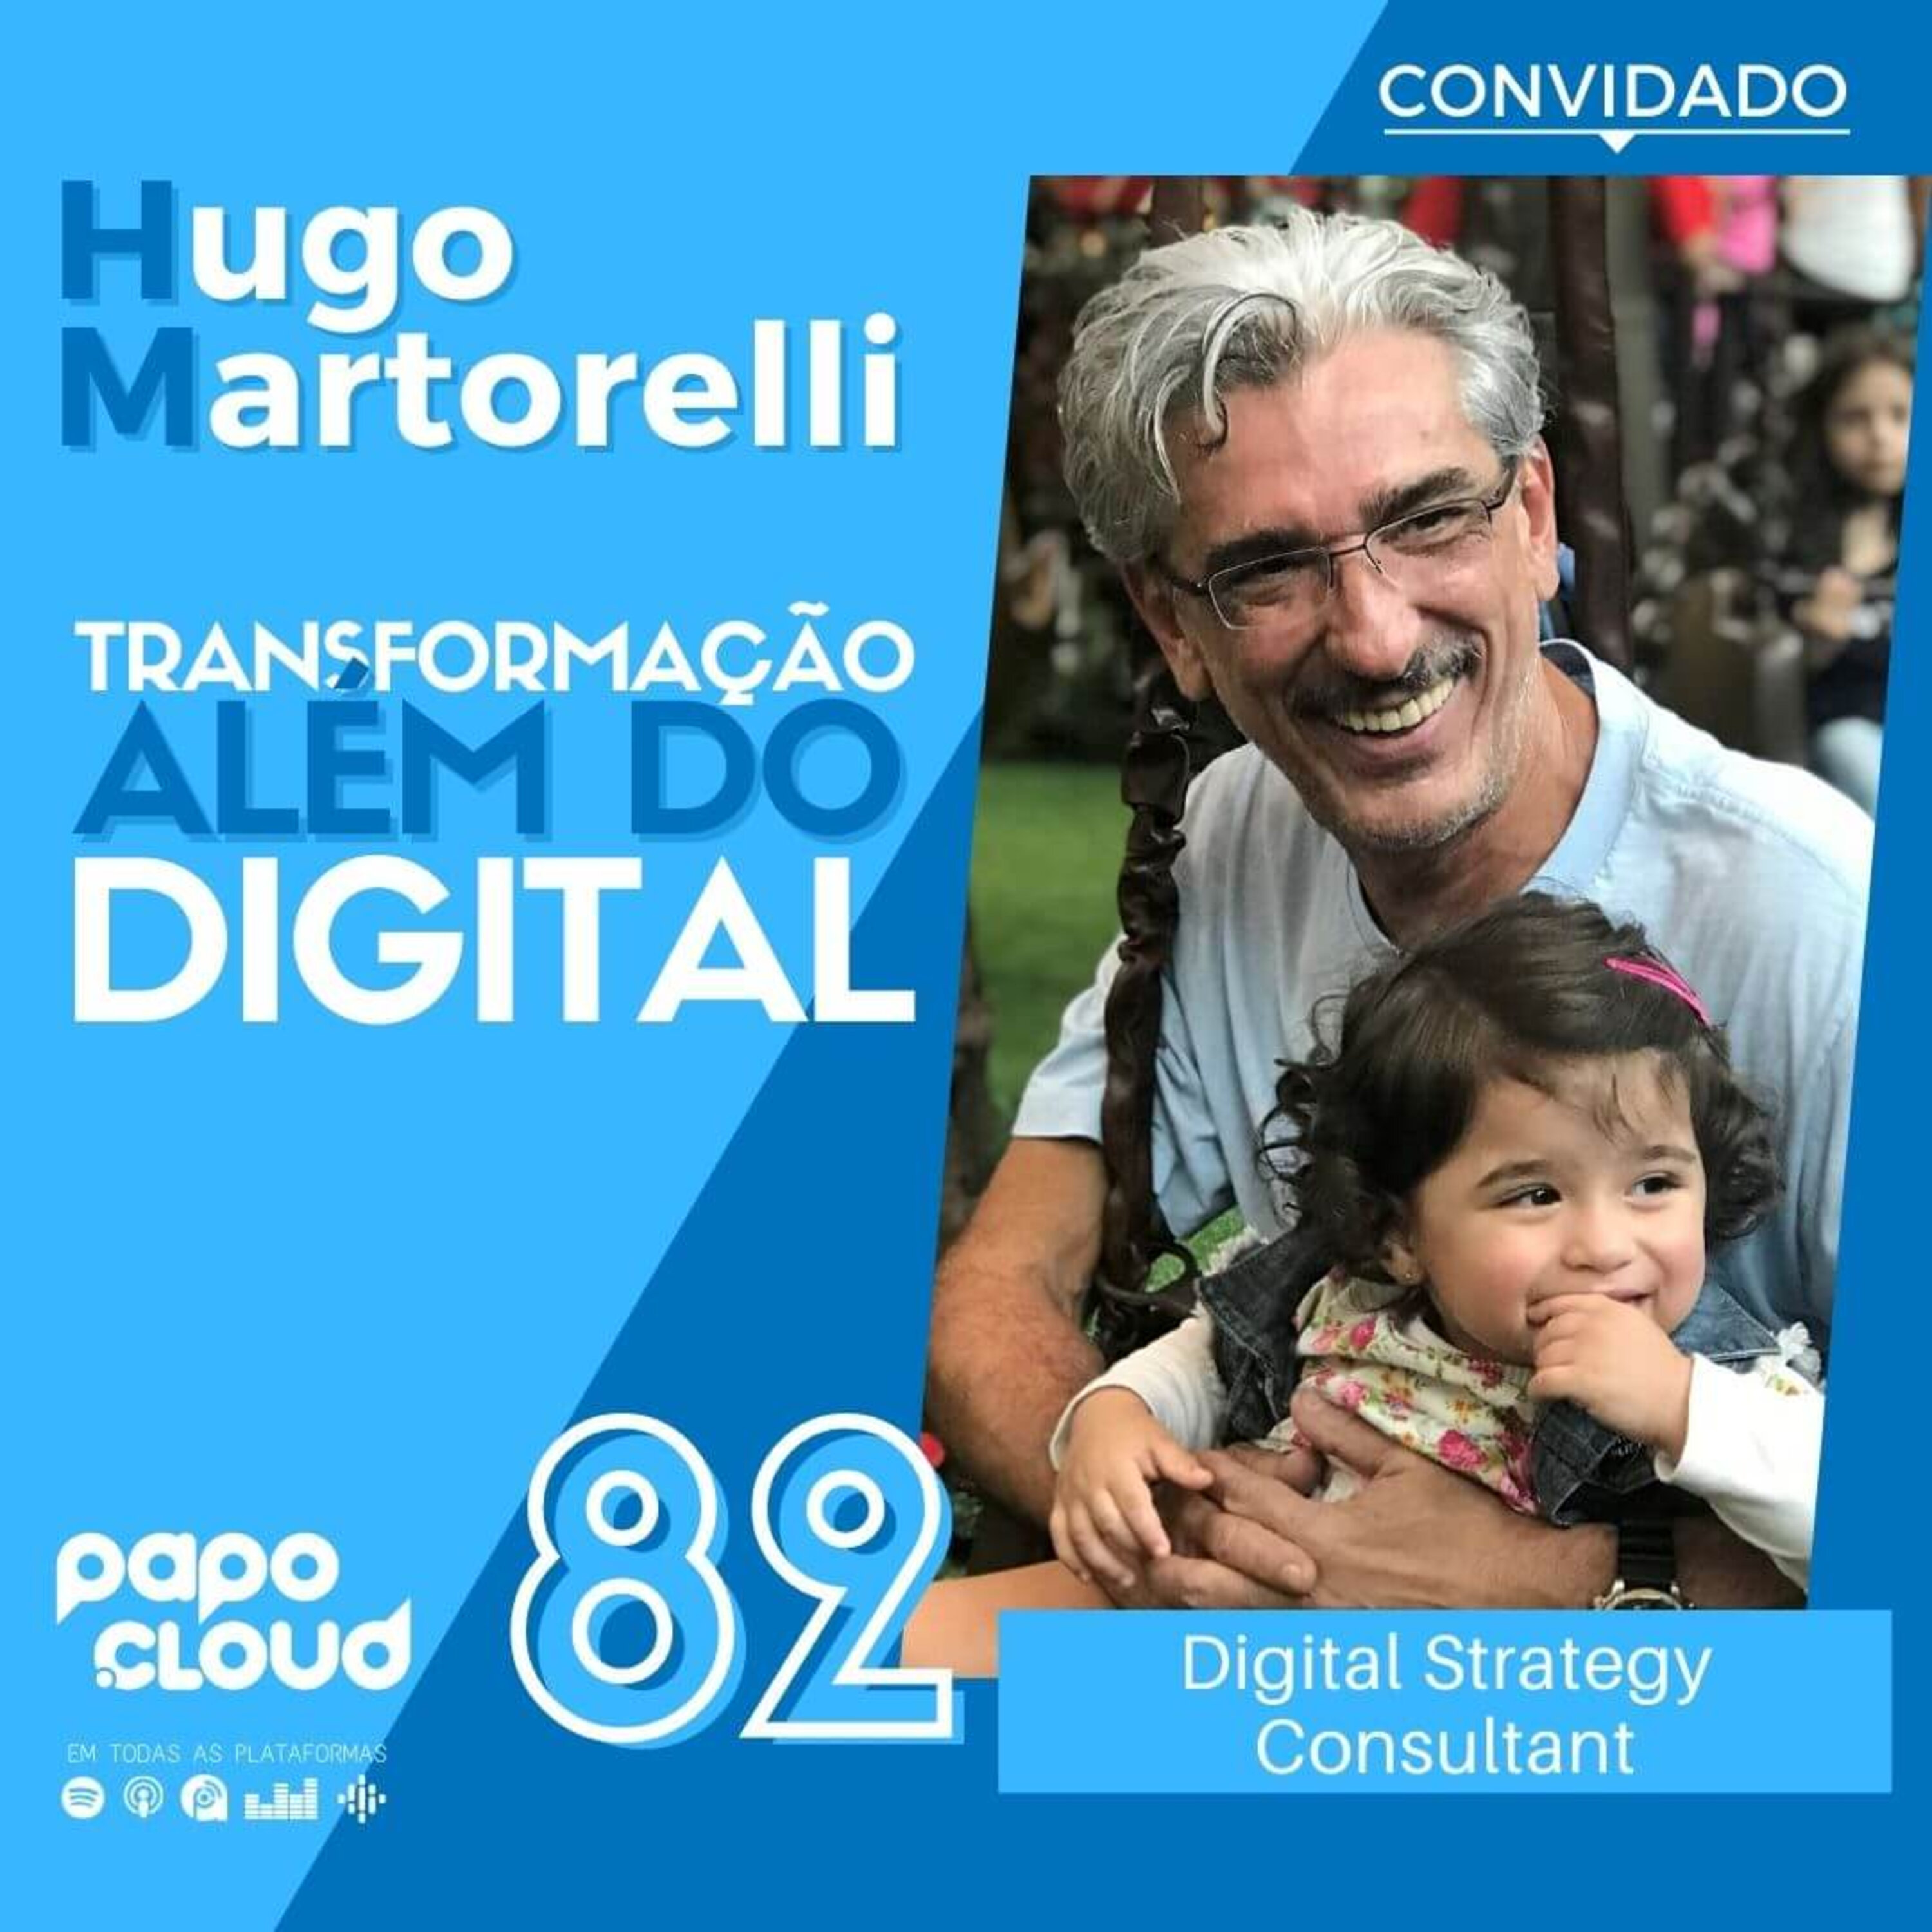 Papo Cloud 082 - Transformação além do digital com Hugo Martorelli  Digital Strategy